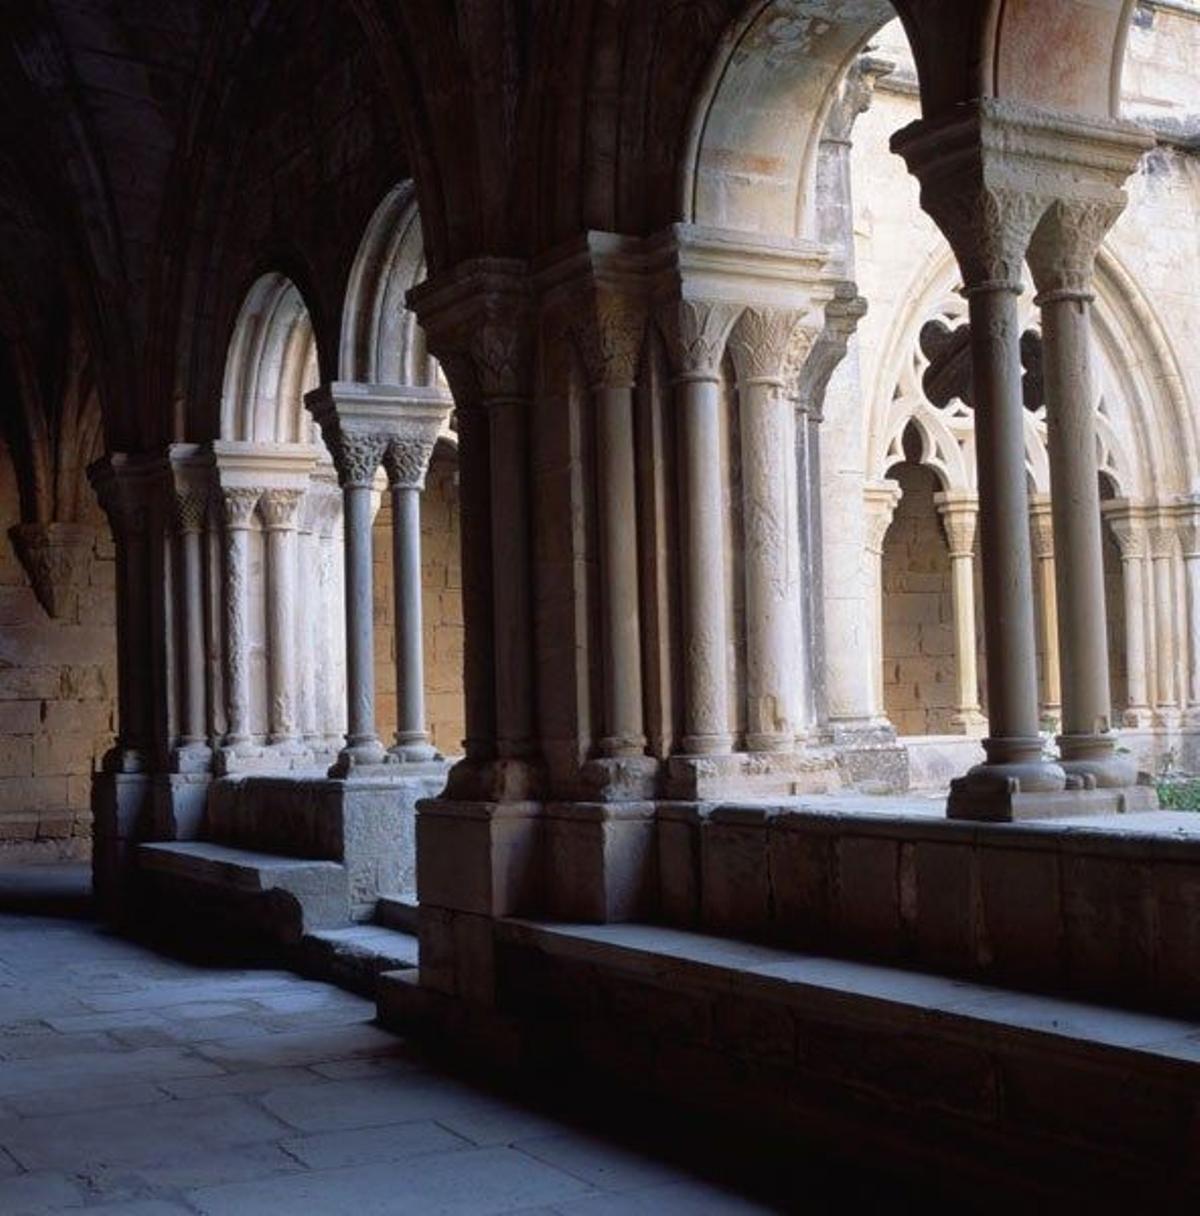 Detalle de la columnata románica del claustro del monasterio de Poblet.